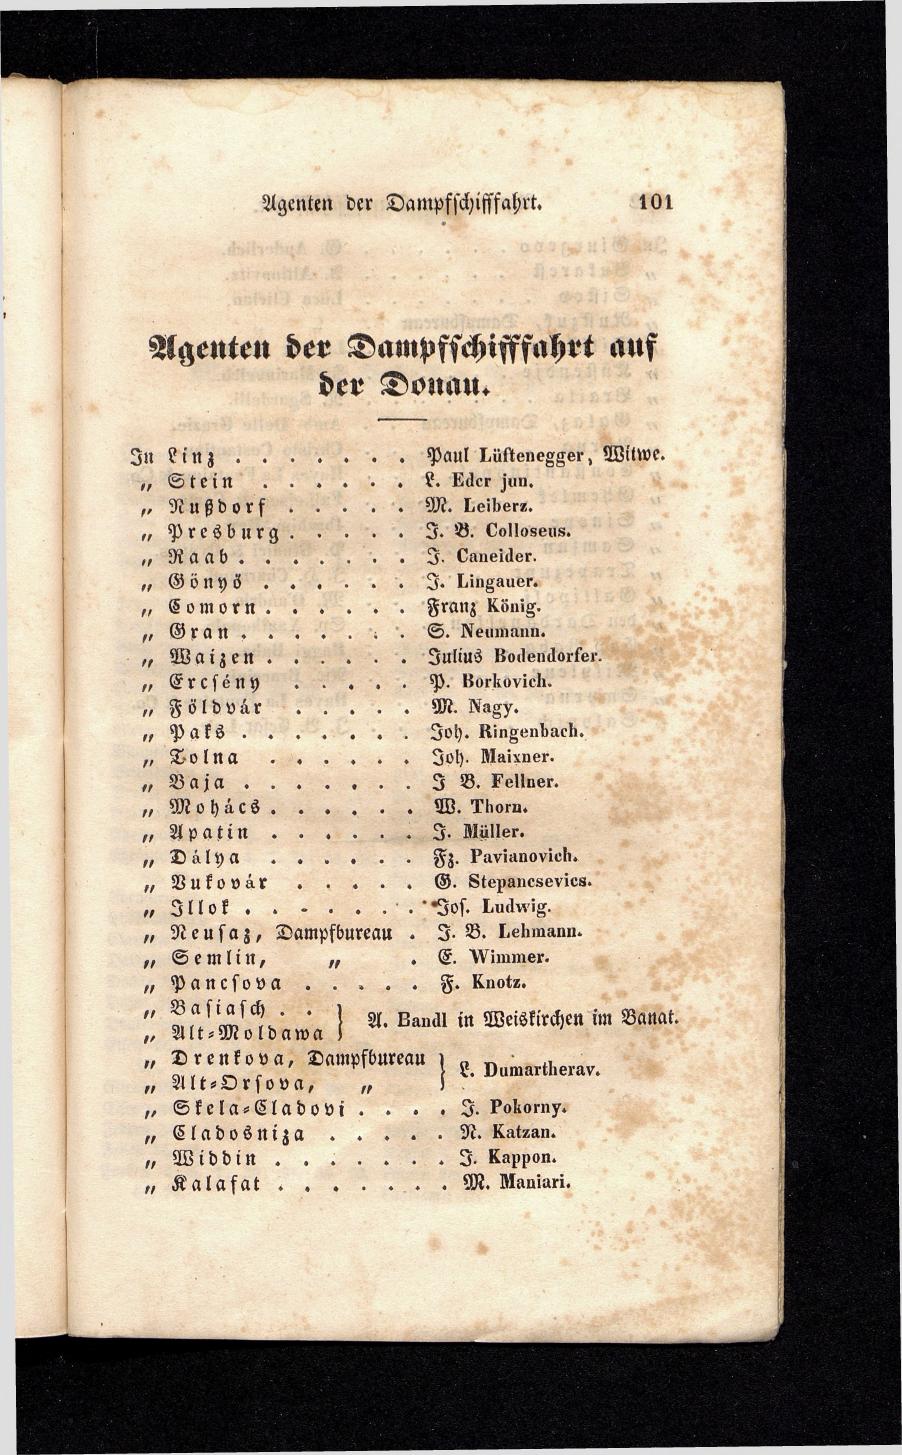 Grosses Adressbuch der Kaufleute. No. 13. Oesterreich ober u. unter der Enns 1844 - Seite 105